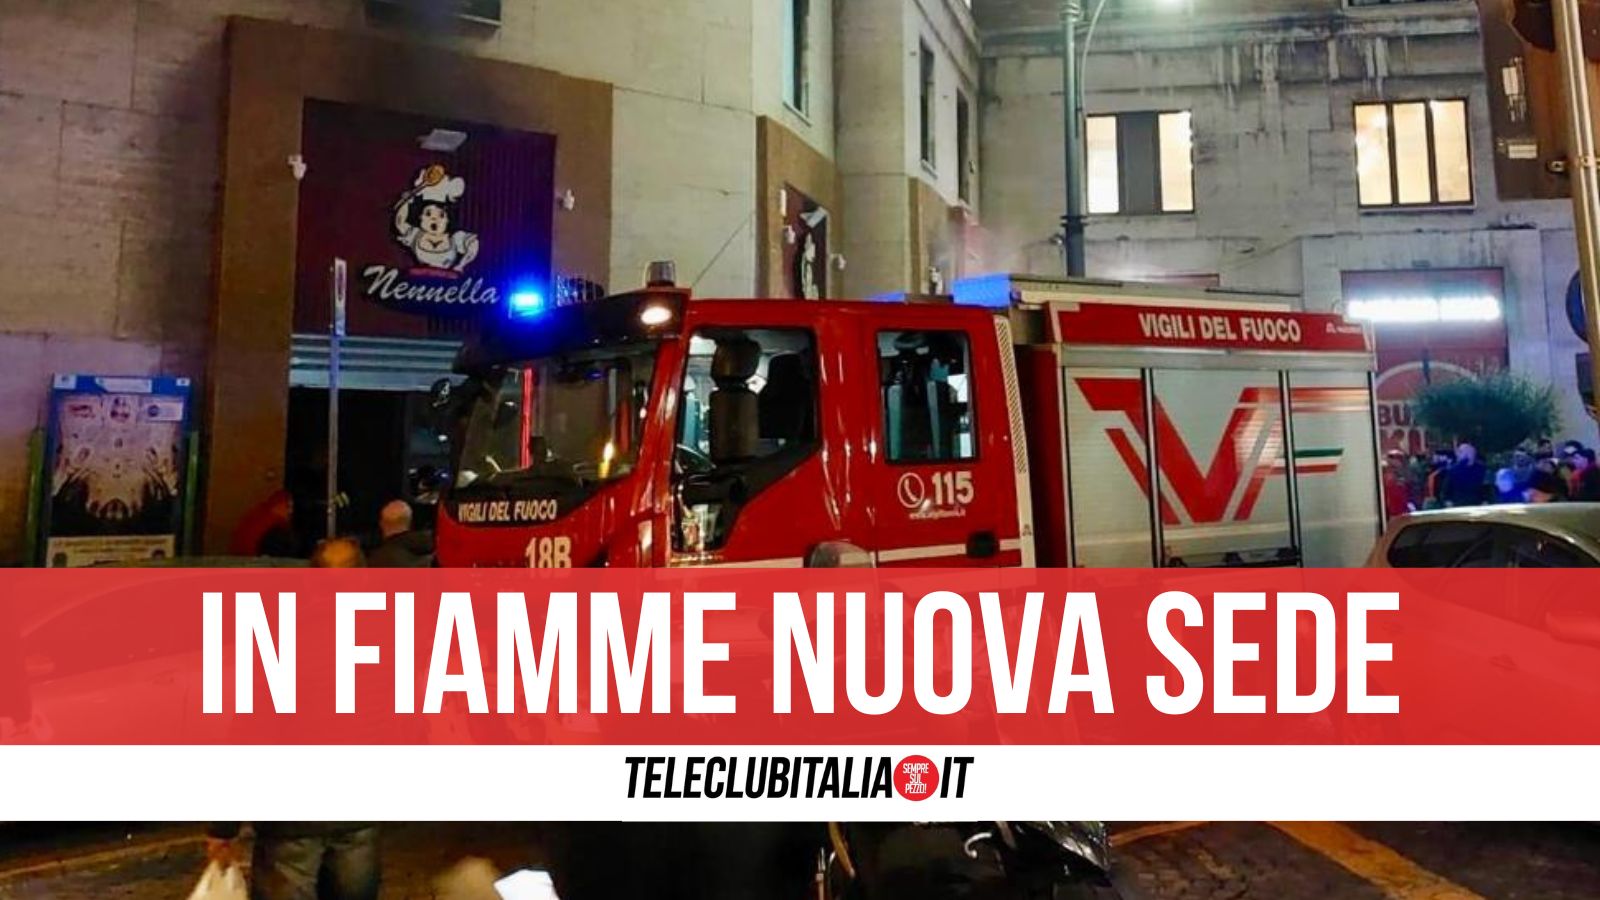 Napoli: incendio nella trattoria Nennella, doveva aprire domani